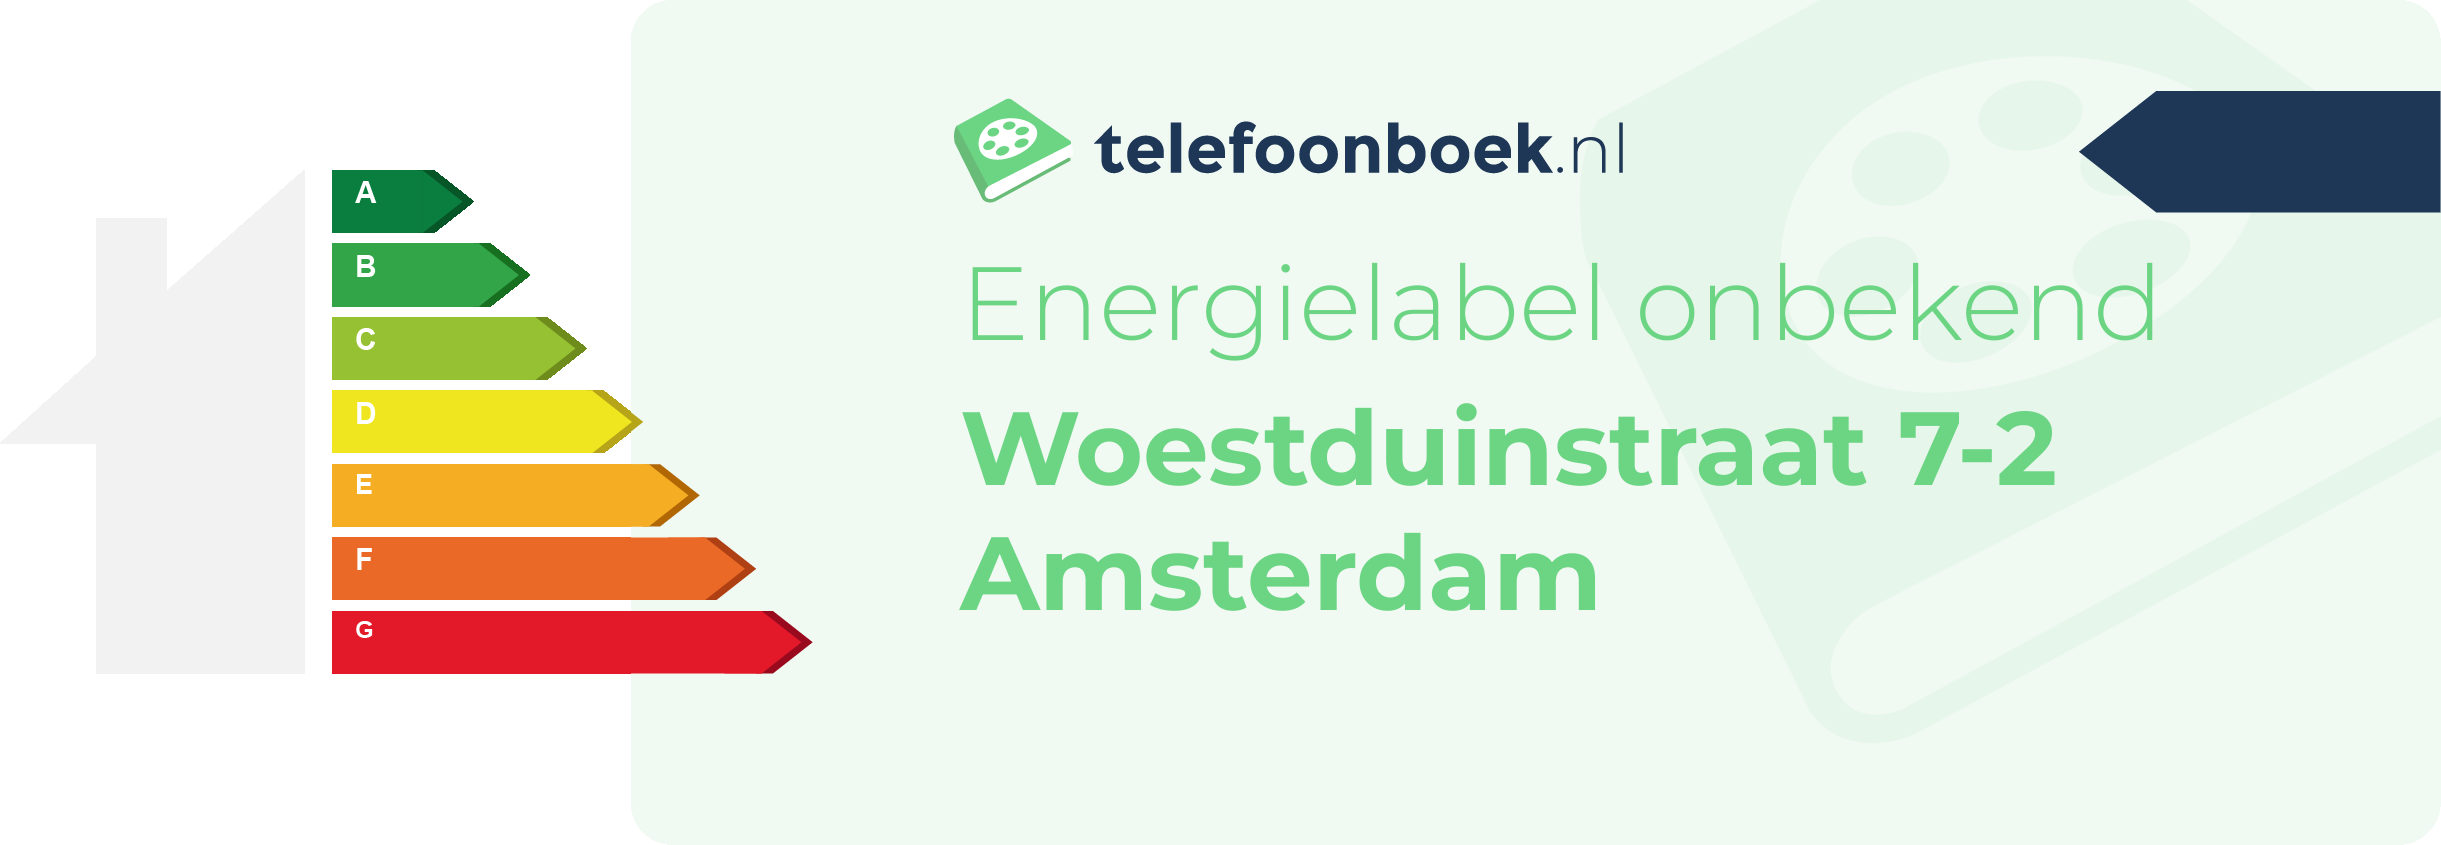 Energielabel Woestduinstraat 7-2 Amsterdam